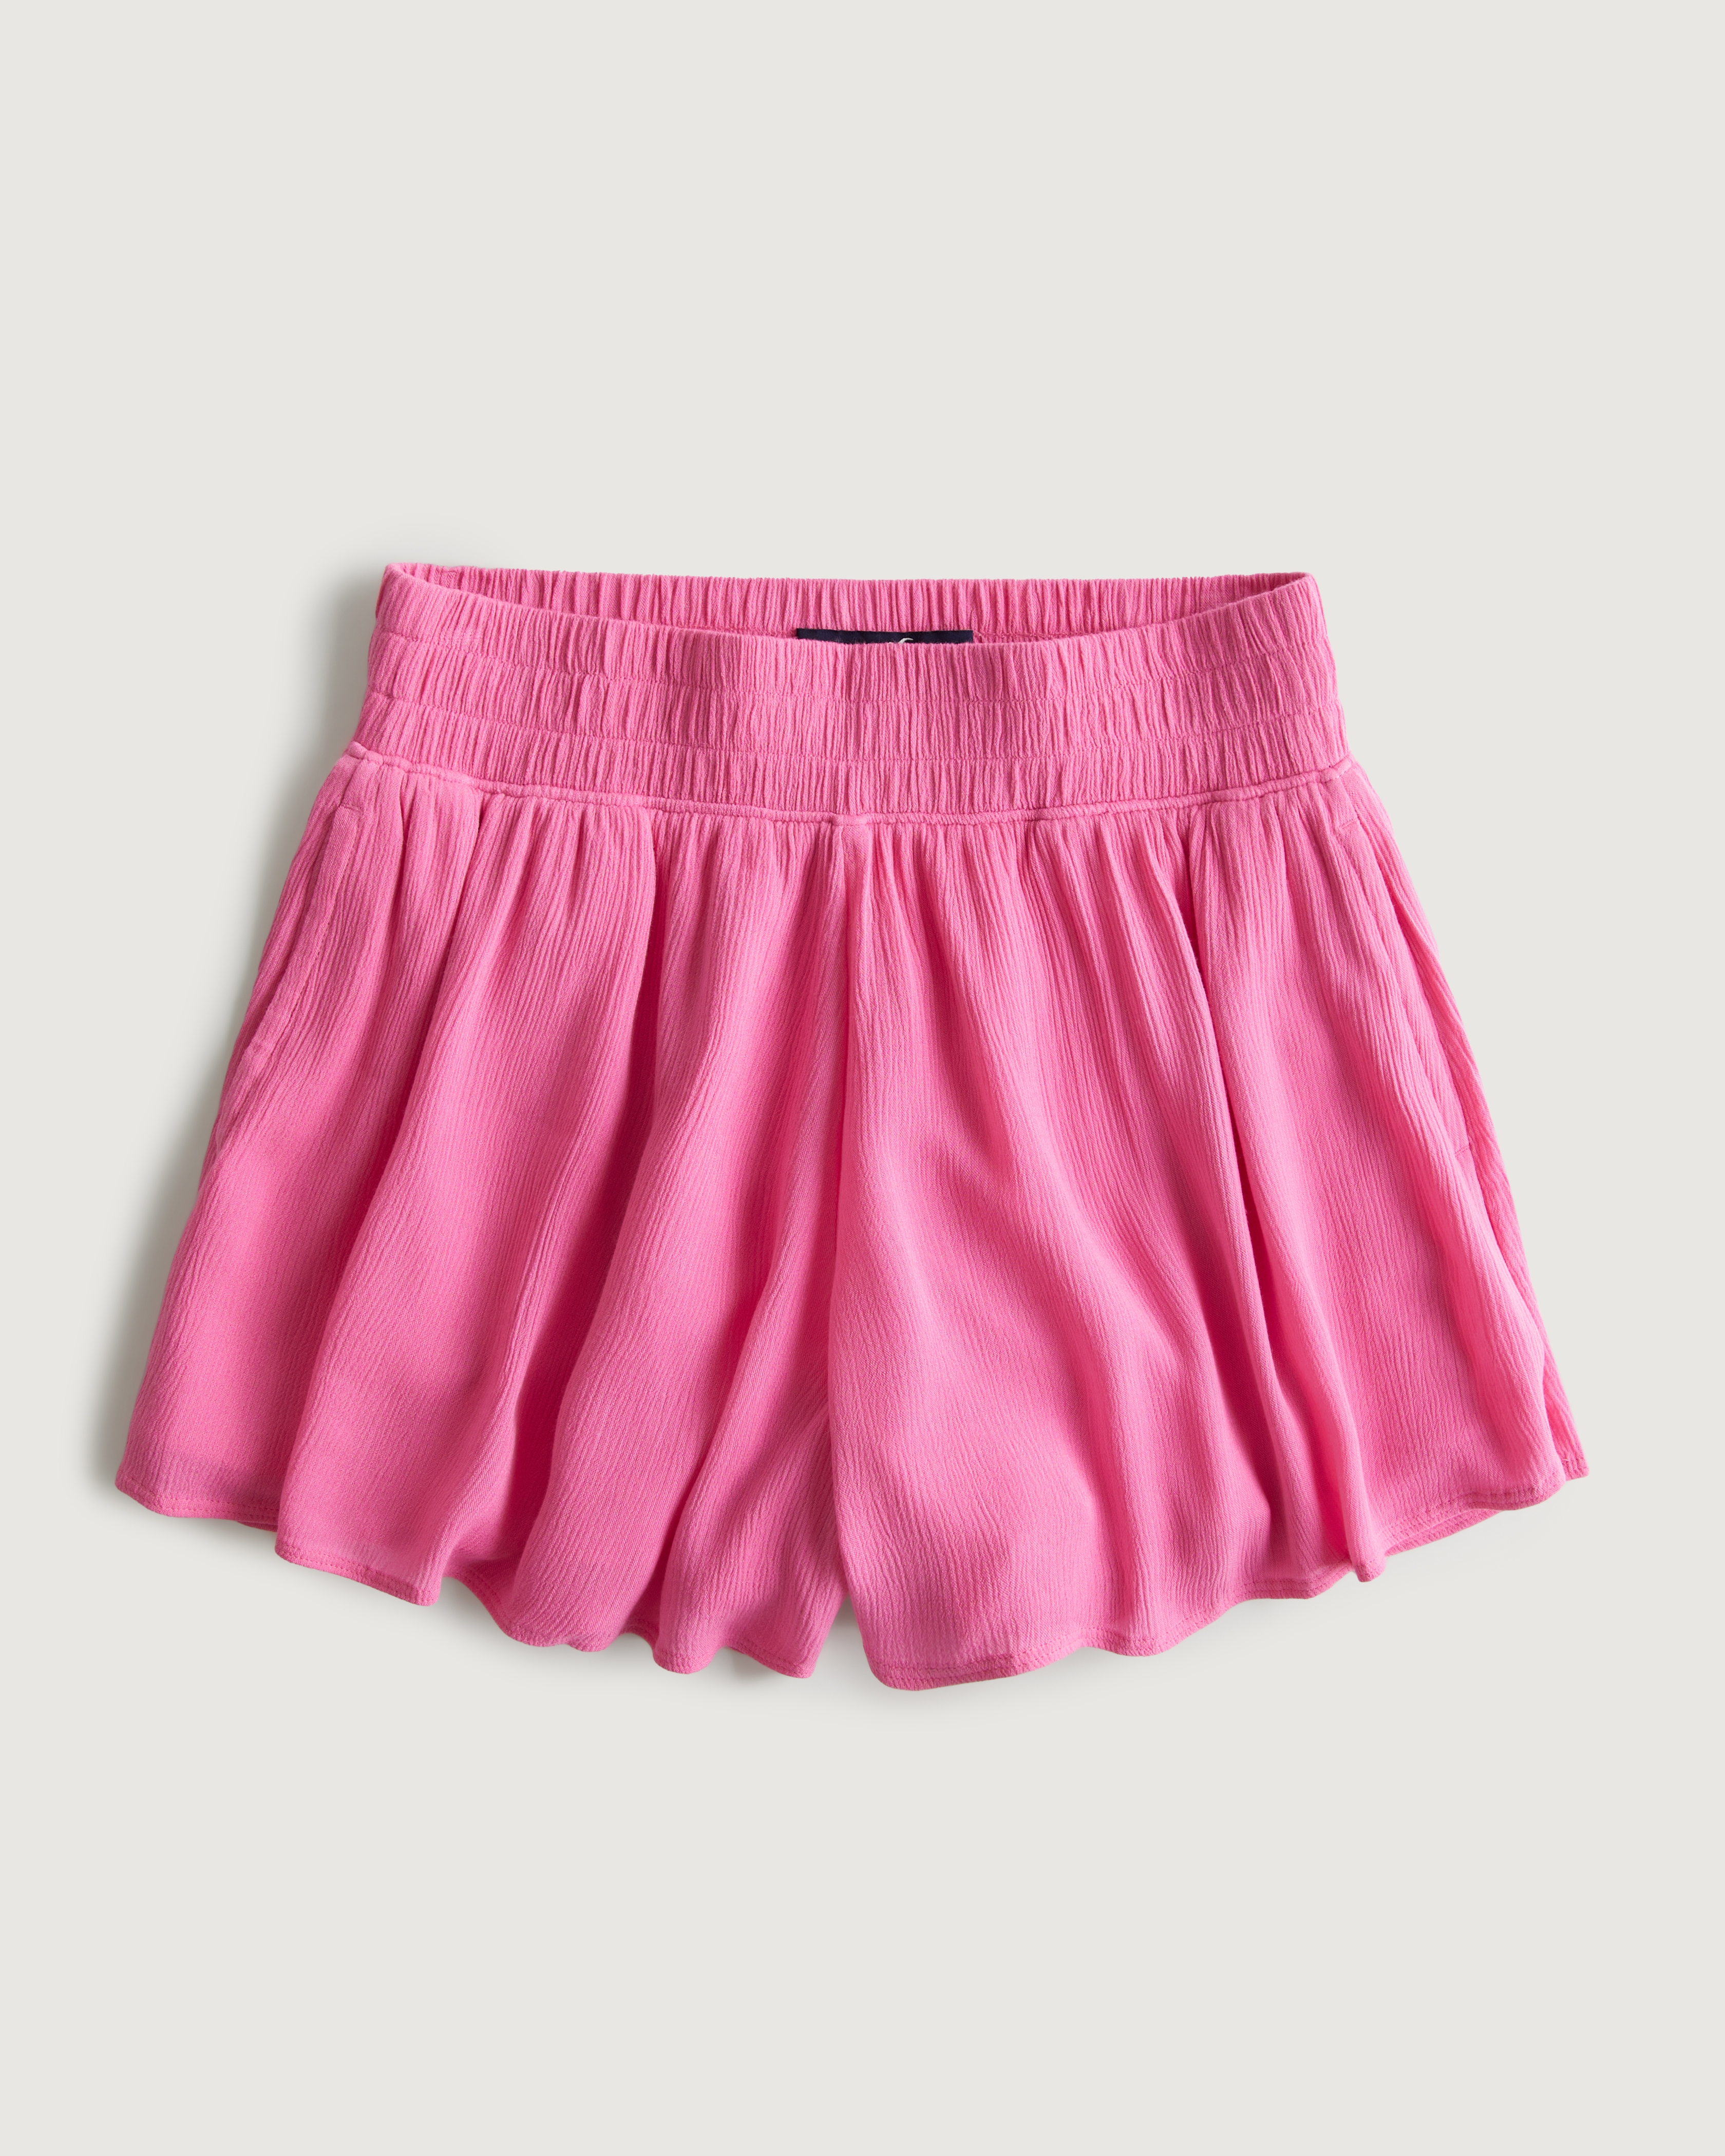 Ultra High-Rise Flowy Soft Shorts